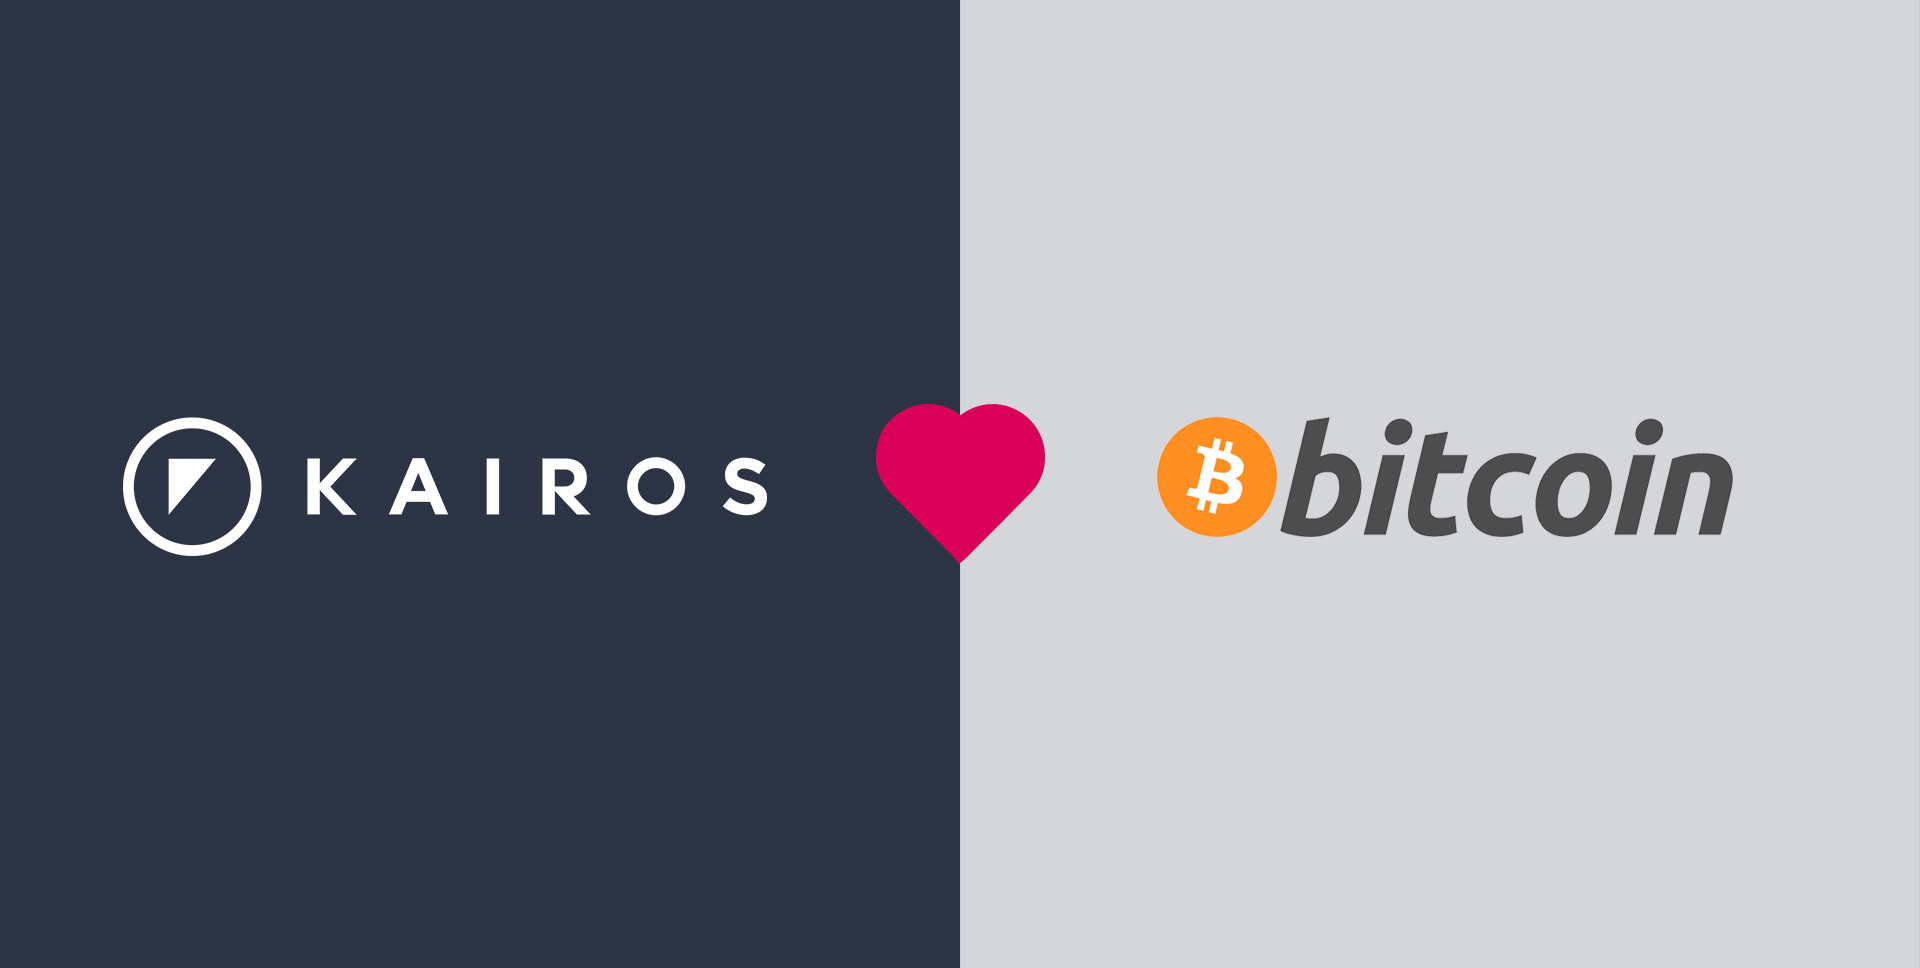 Kairos face recognition logo and Bitcoin logo